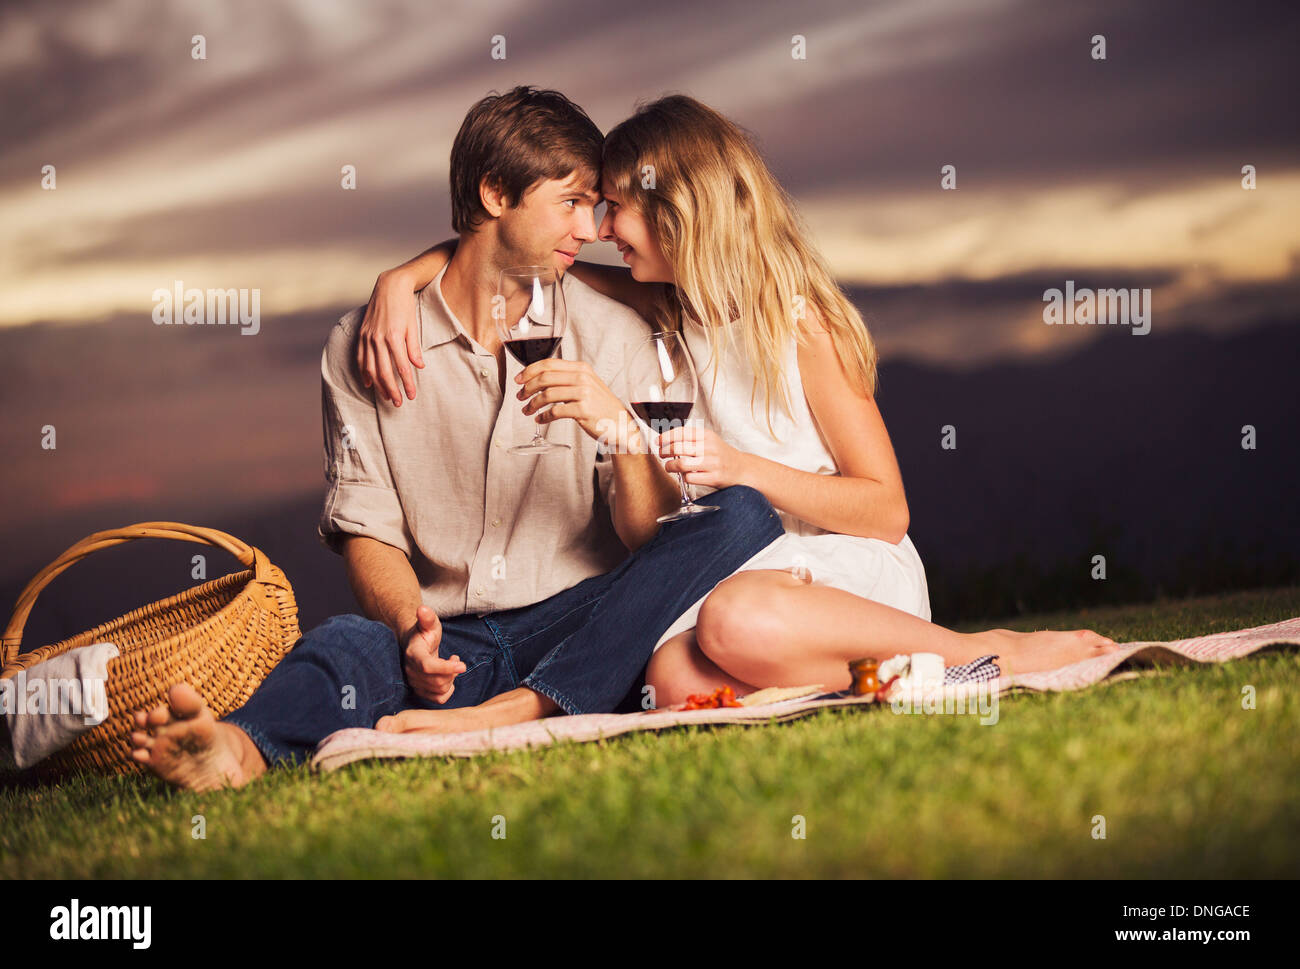 Beau couple de boire dans un verre de vin sur pique-nique romantique au coucher du soleil Banque D'Images